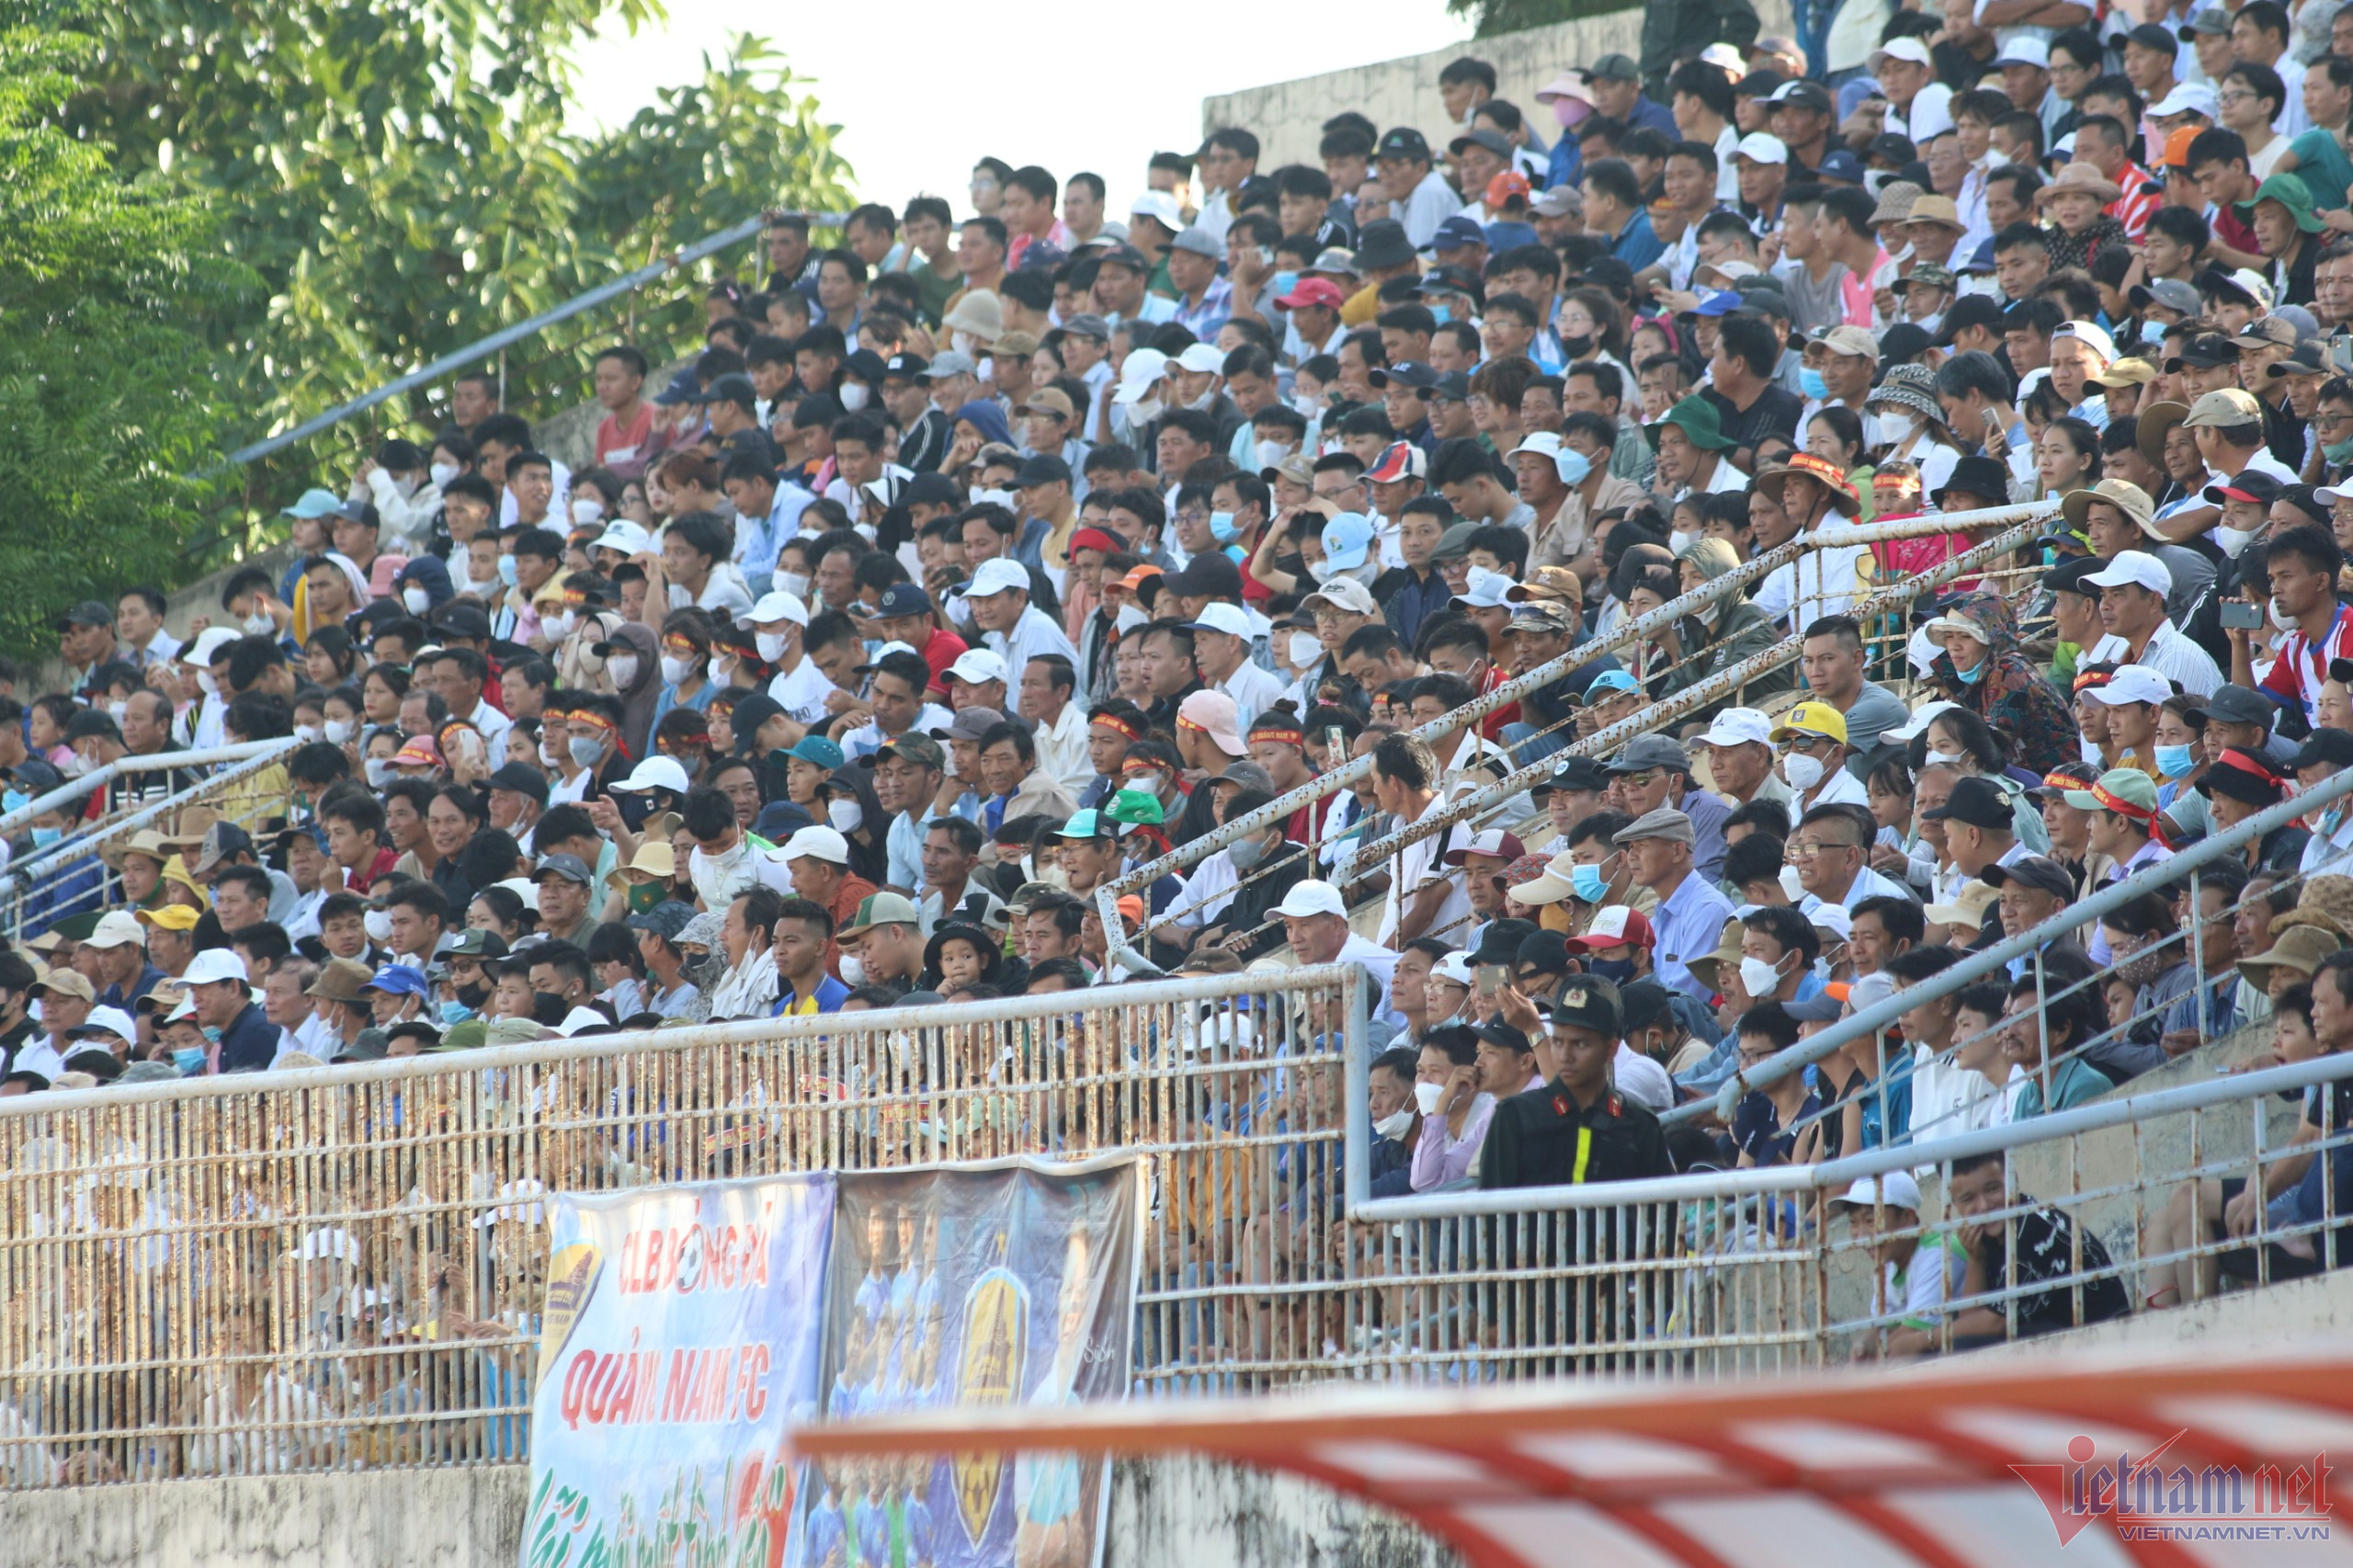 Quảng Nam vô địch giải hạng Nhất, trở lại V-League - Bóng Đá